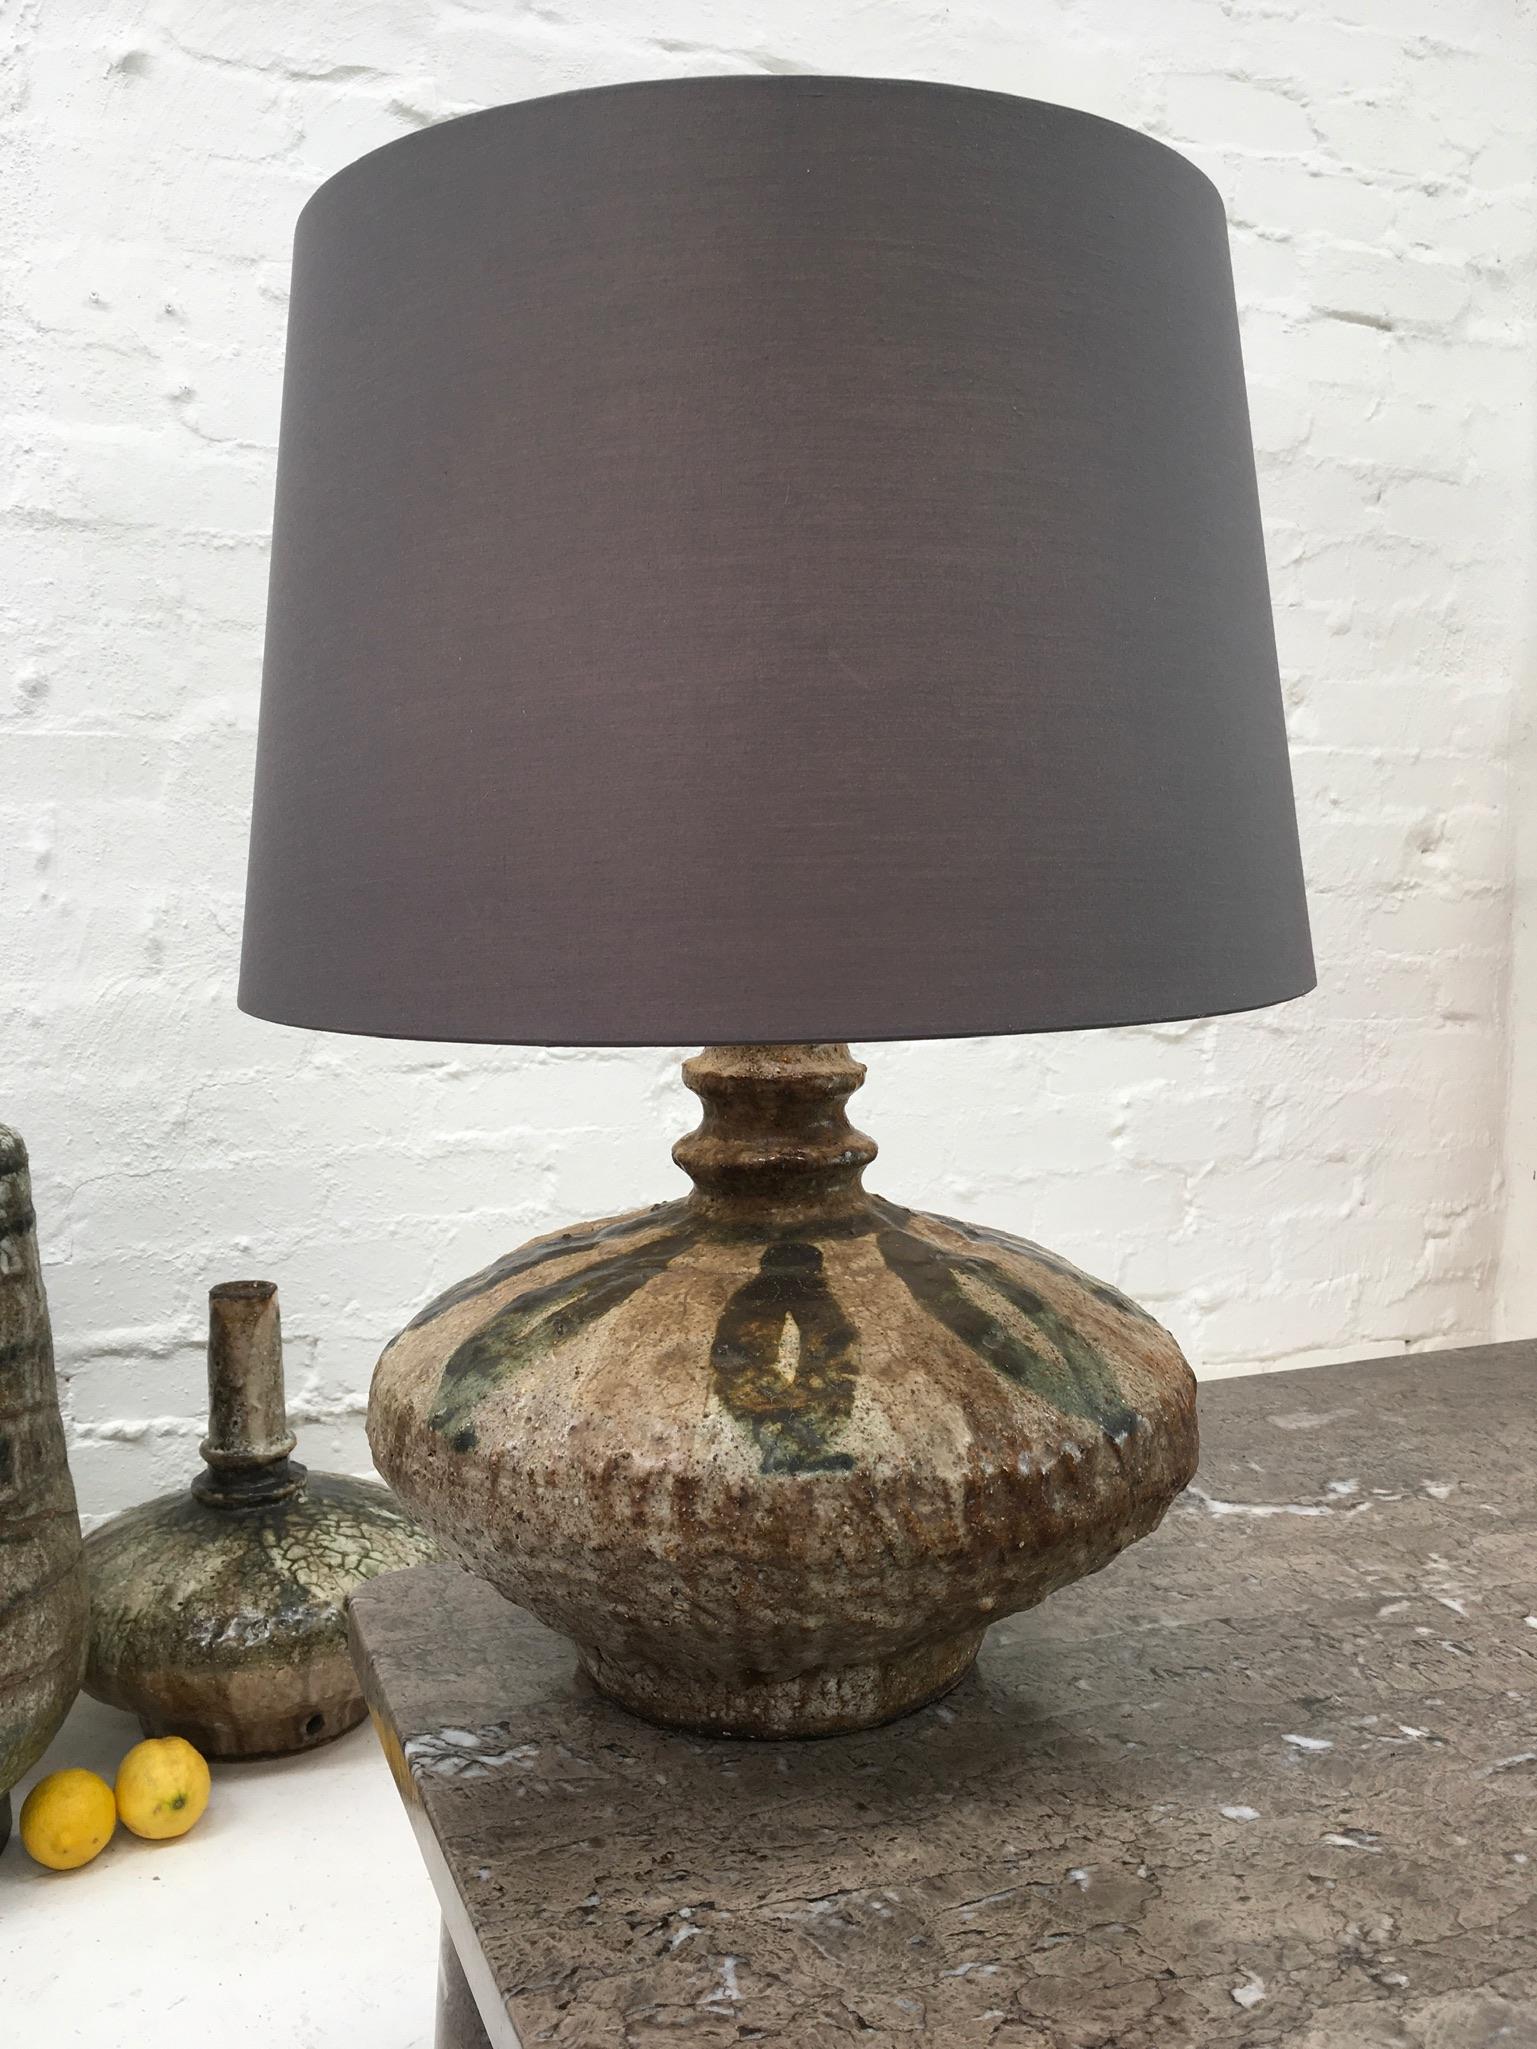 stone based lamp